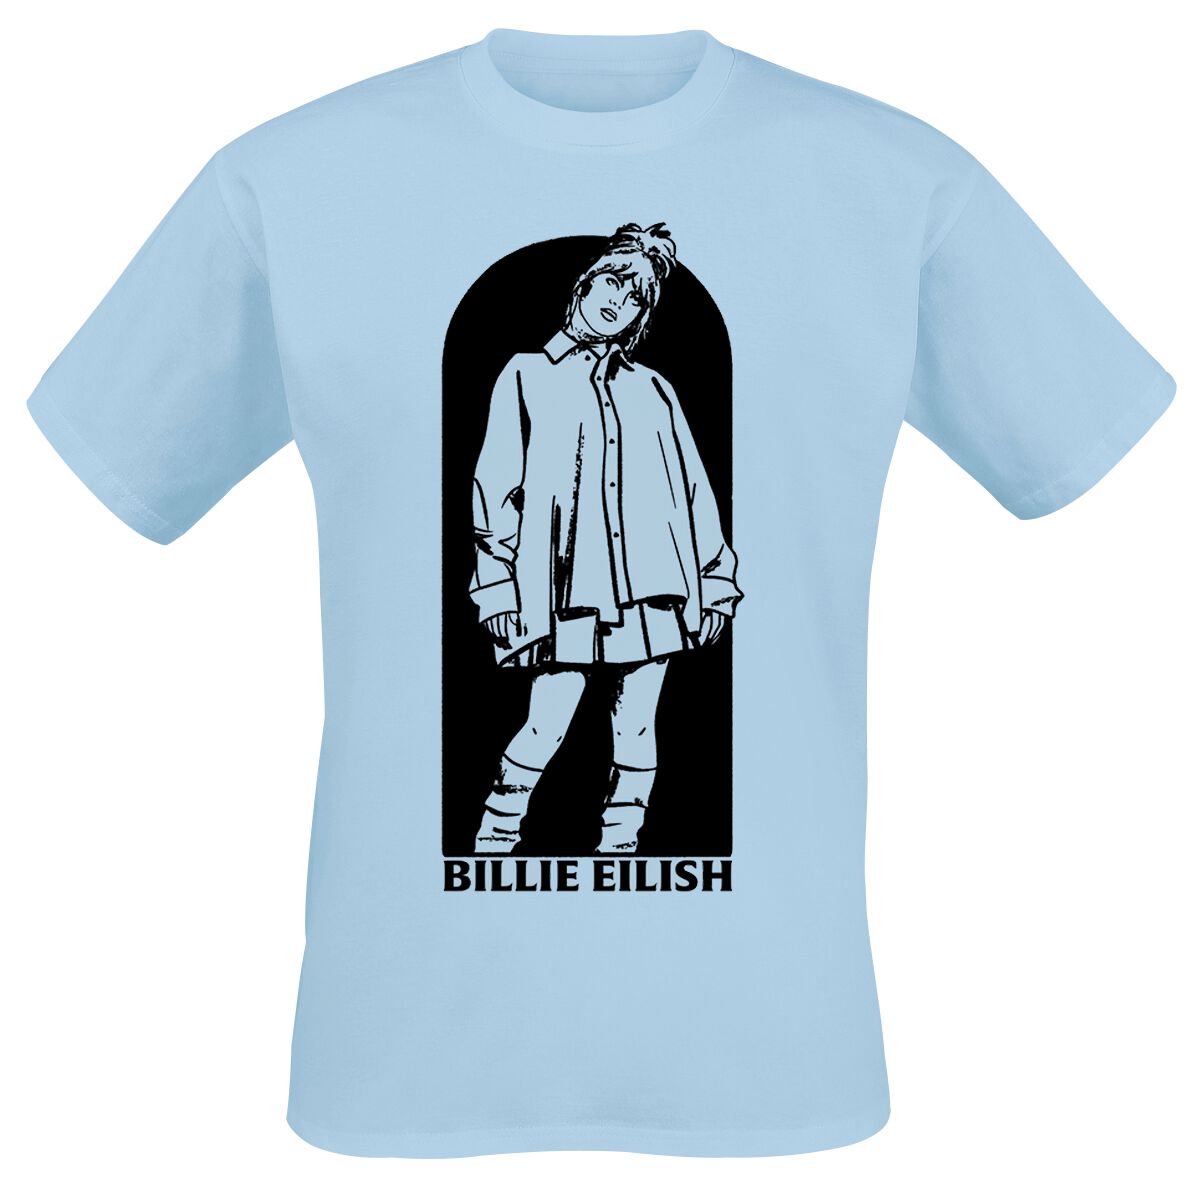 Billie Eilish T-Shirt - Doorway - S bis XL - für Männer - Größe M - hellblau  - Lizenziertes Merchandise!